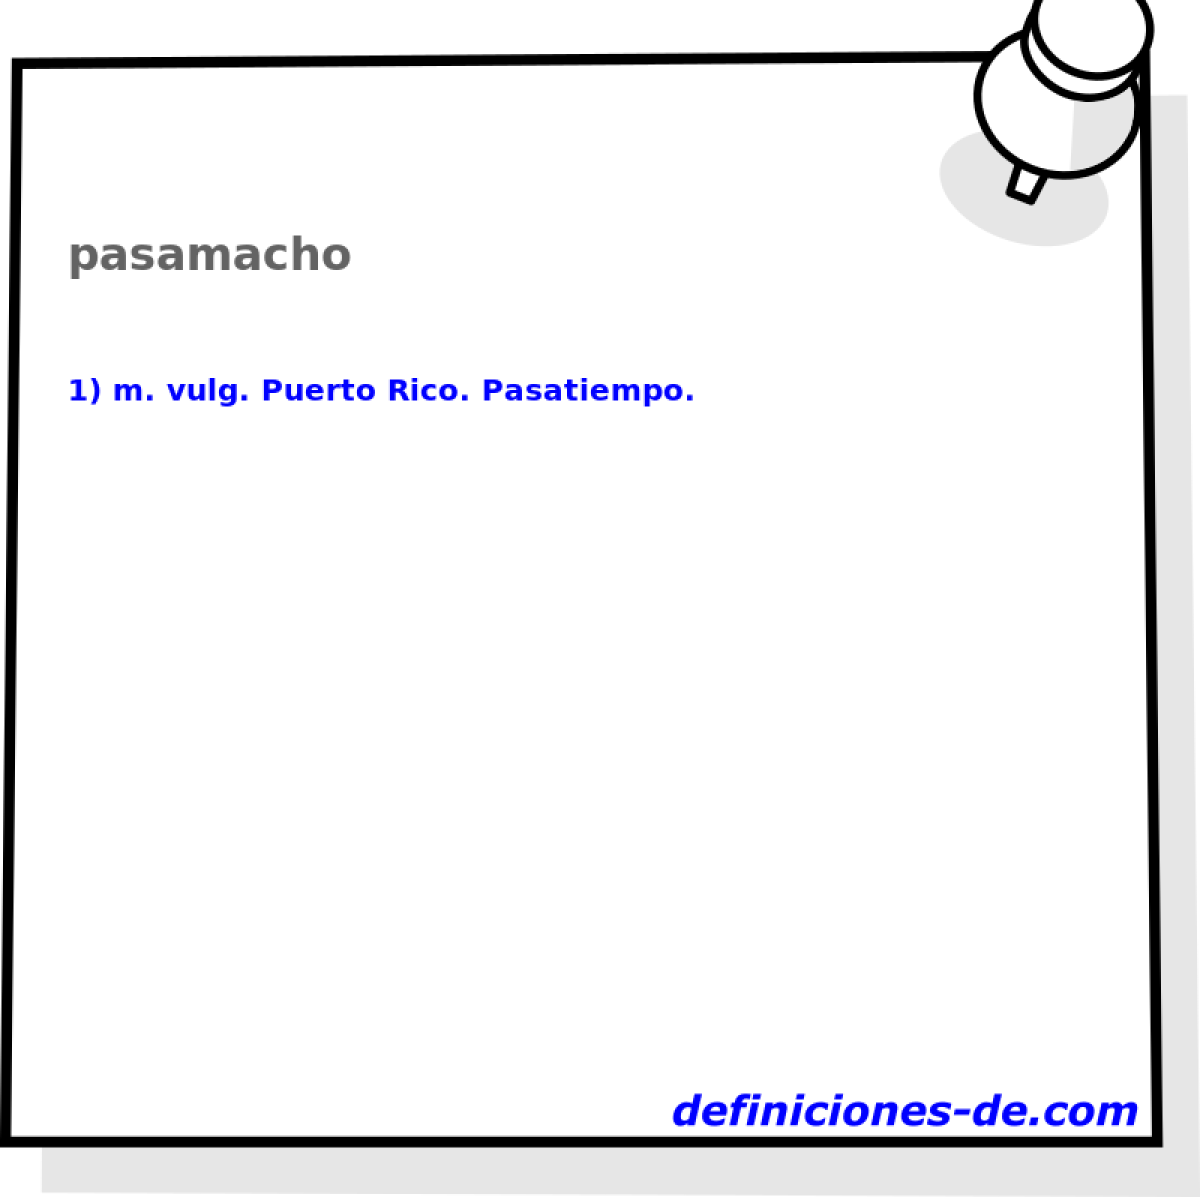 pasamacho 